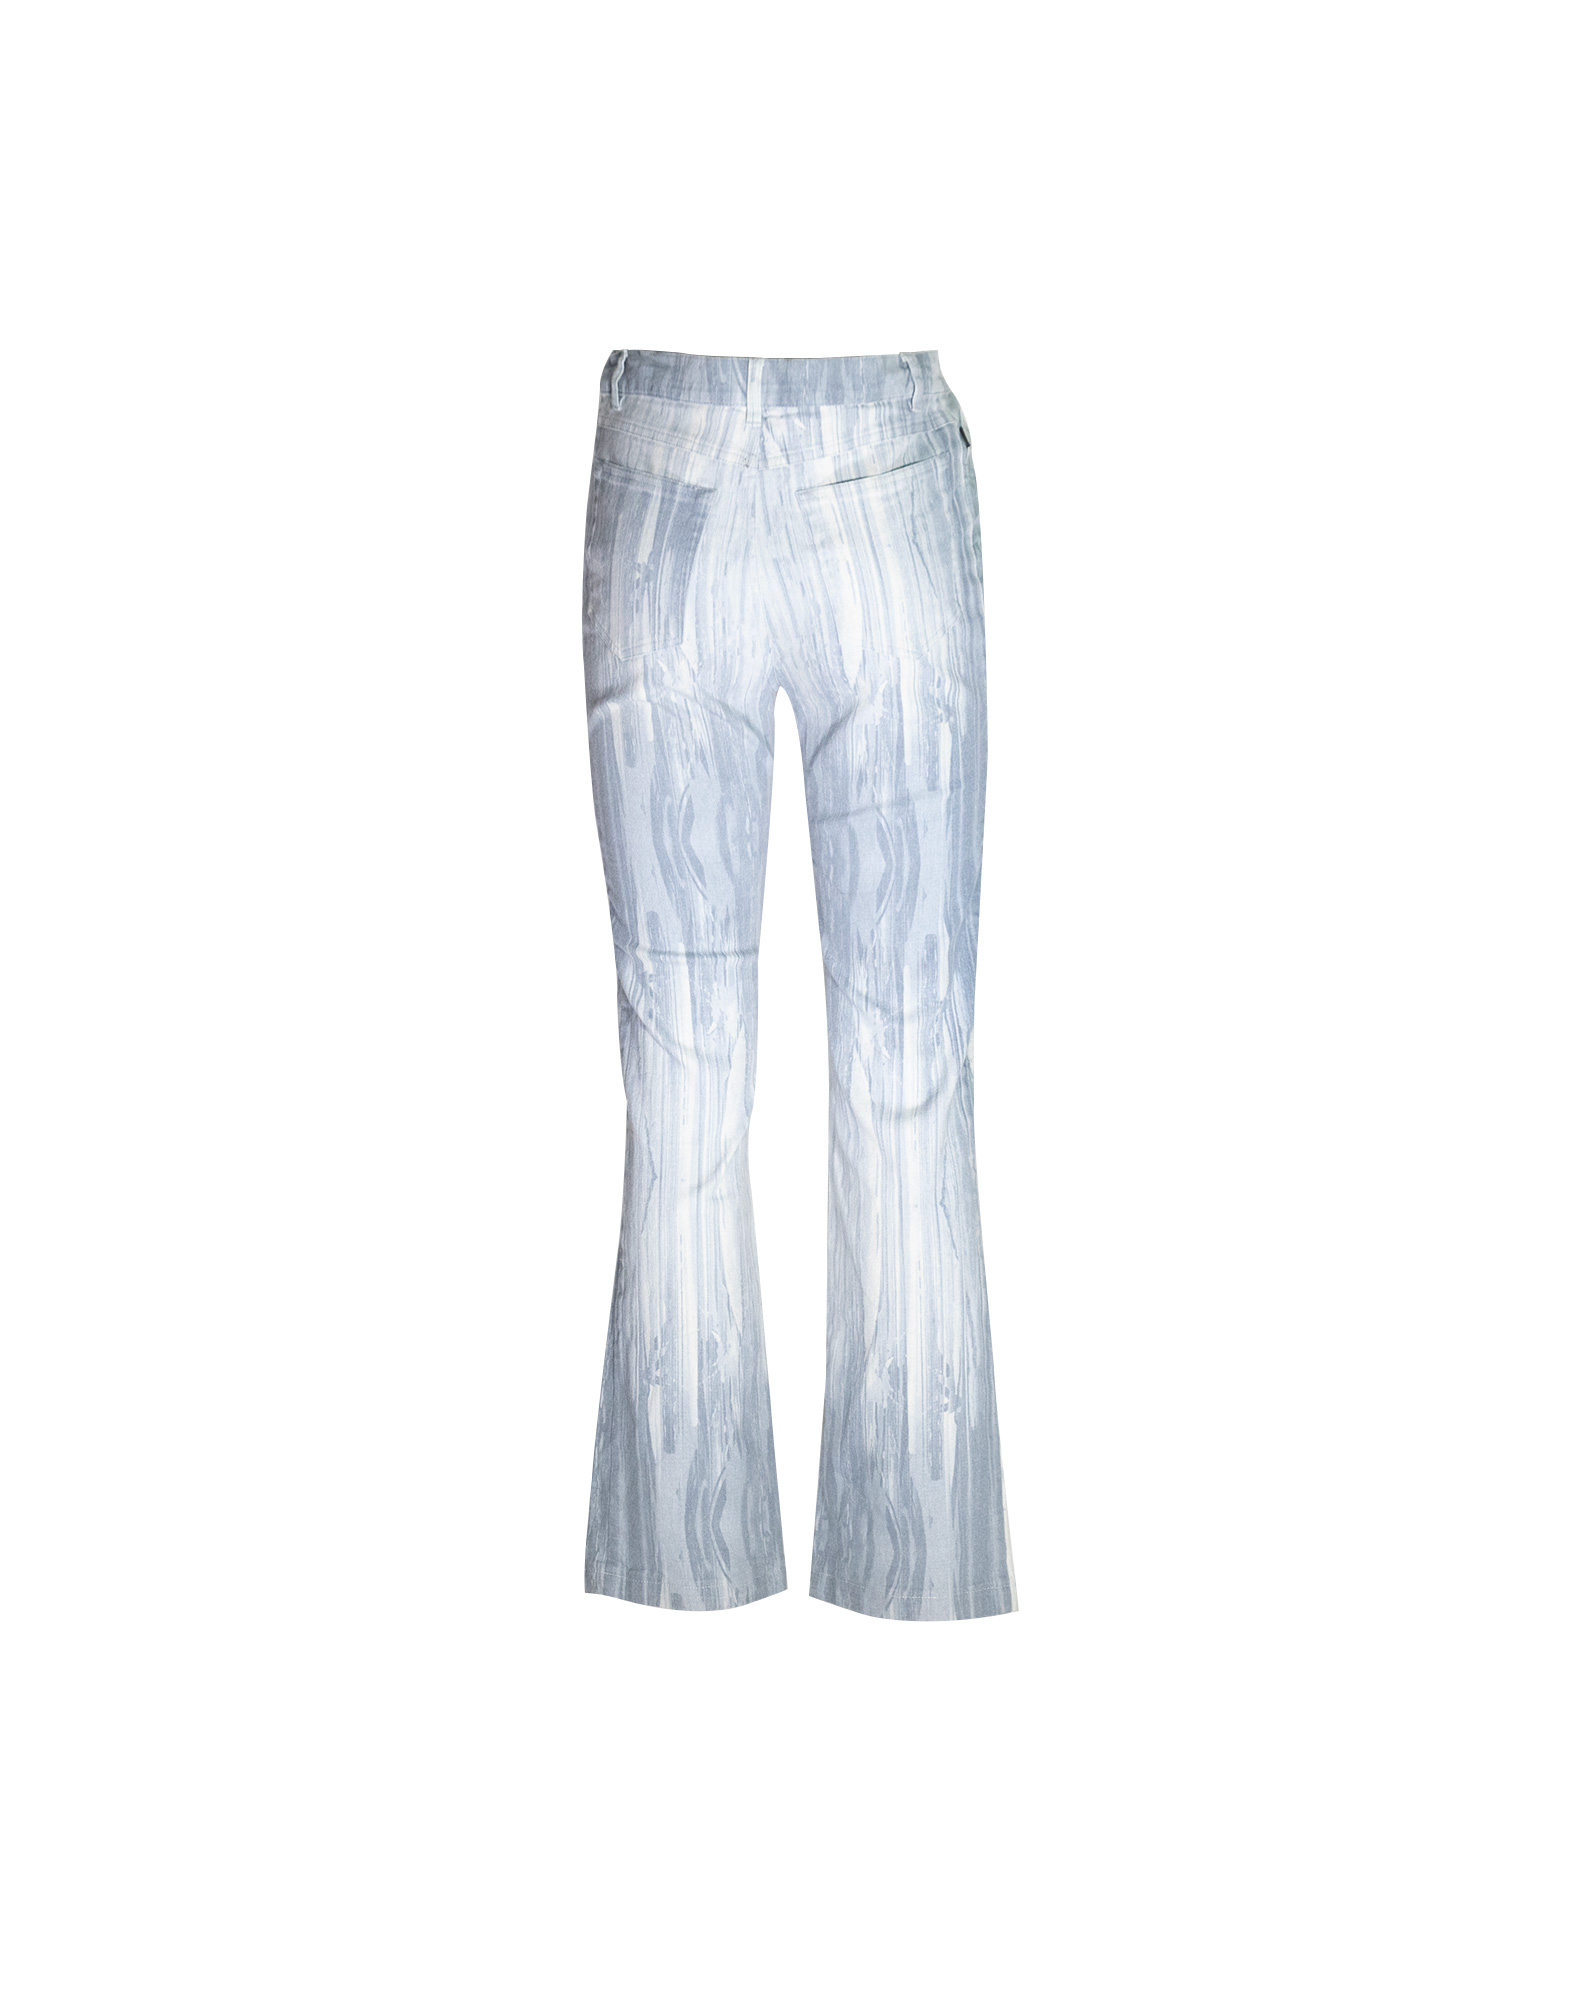 JustCavalli - Pantaloni vintage con pattern